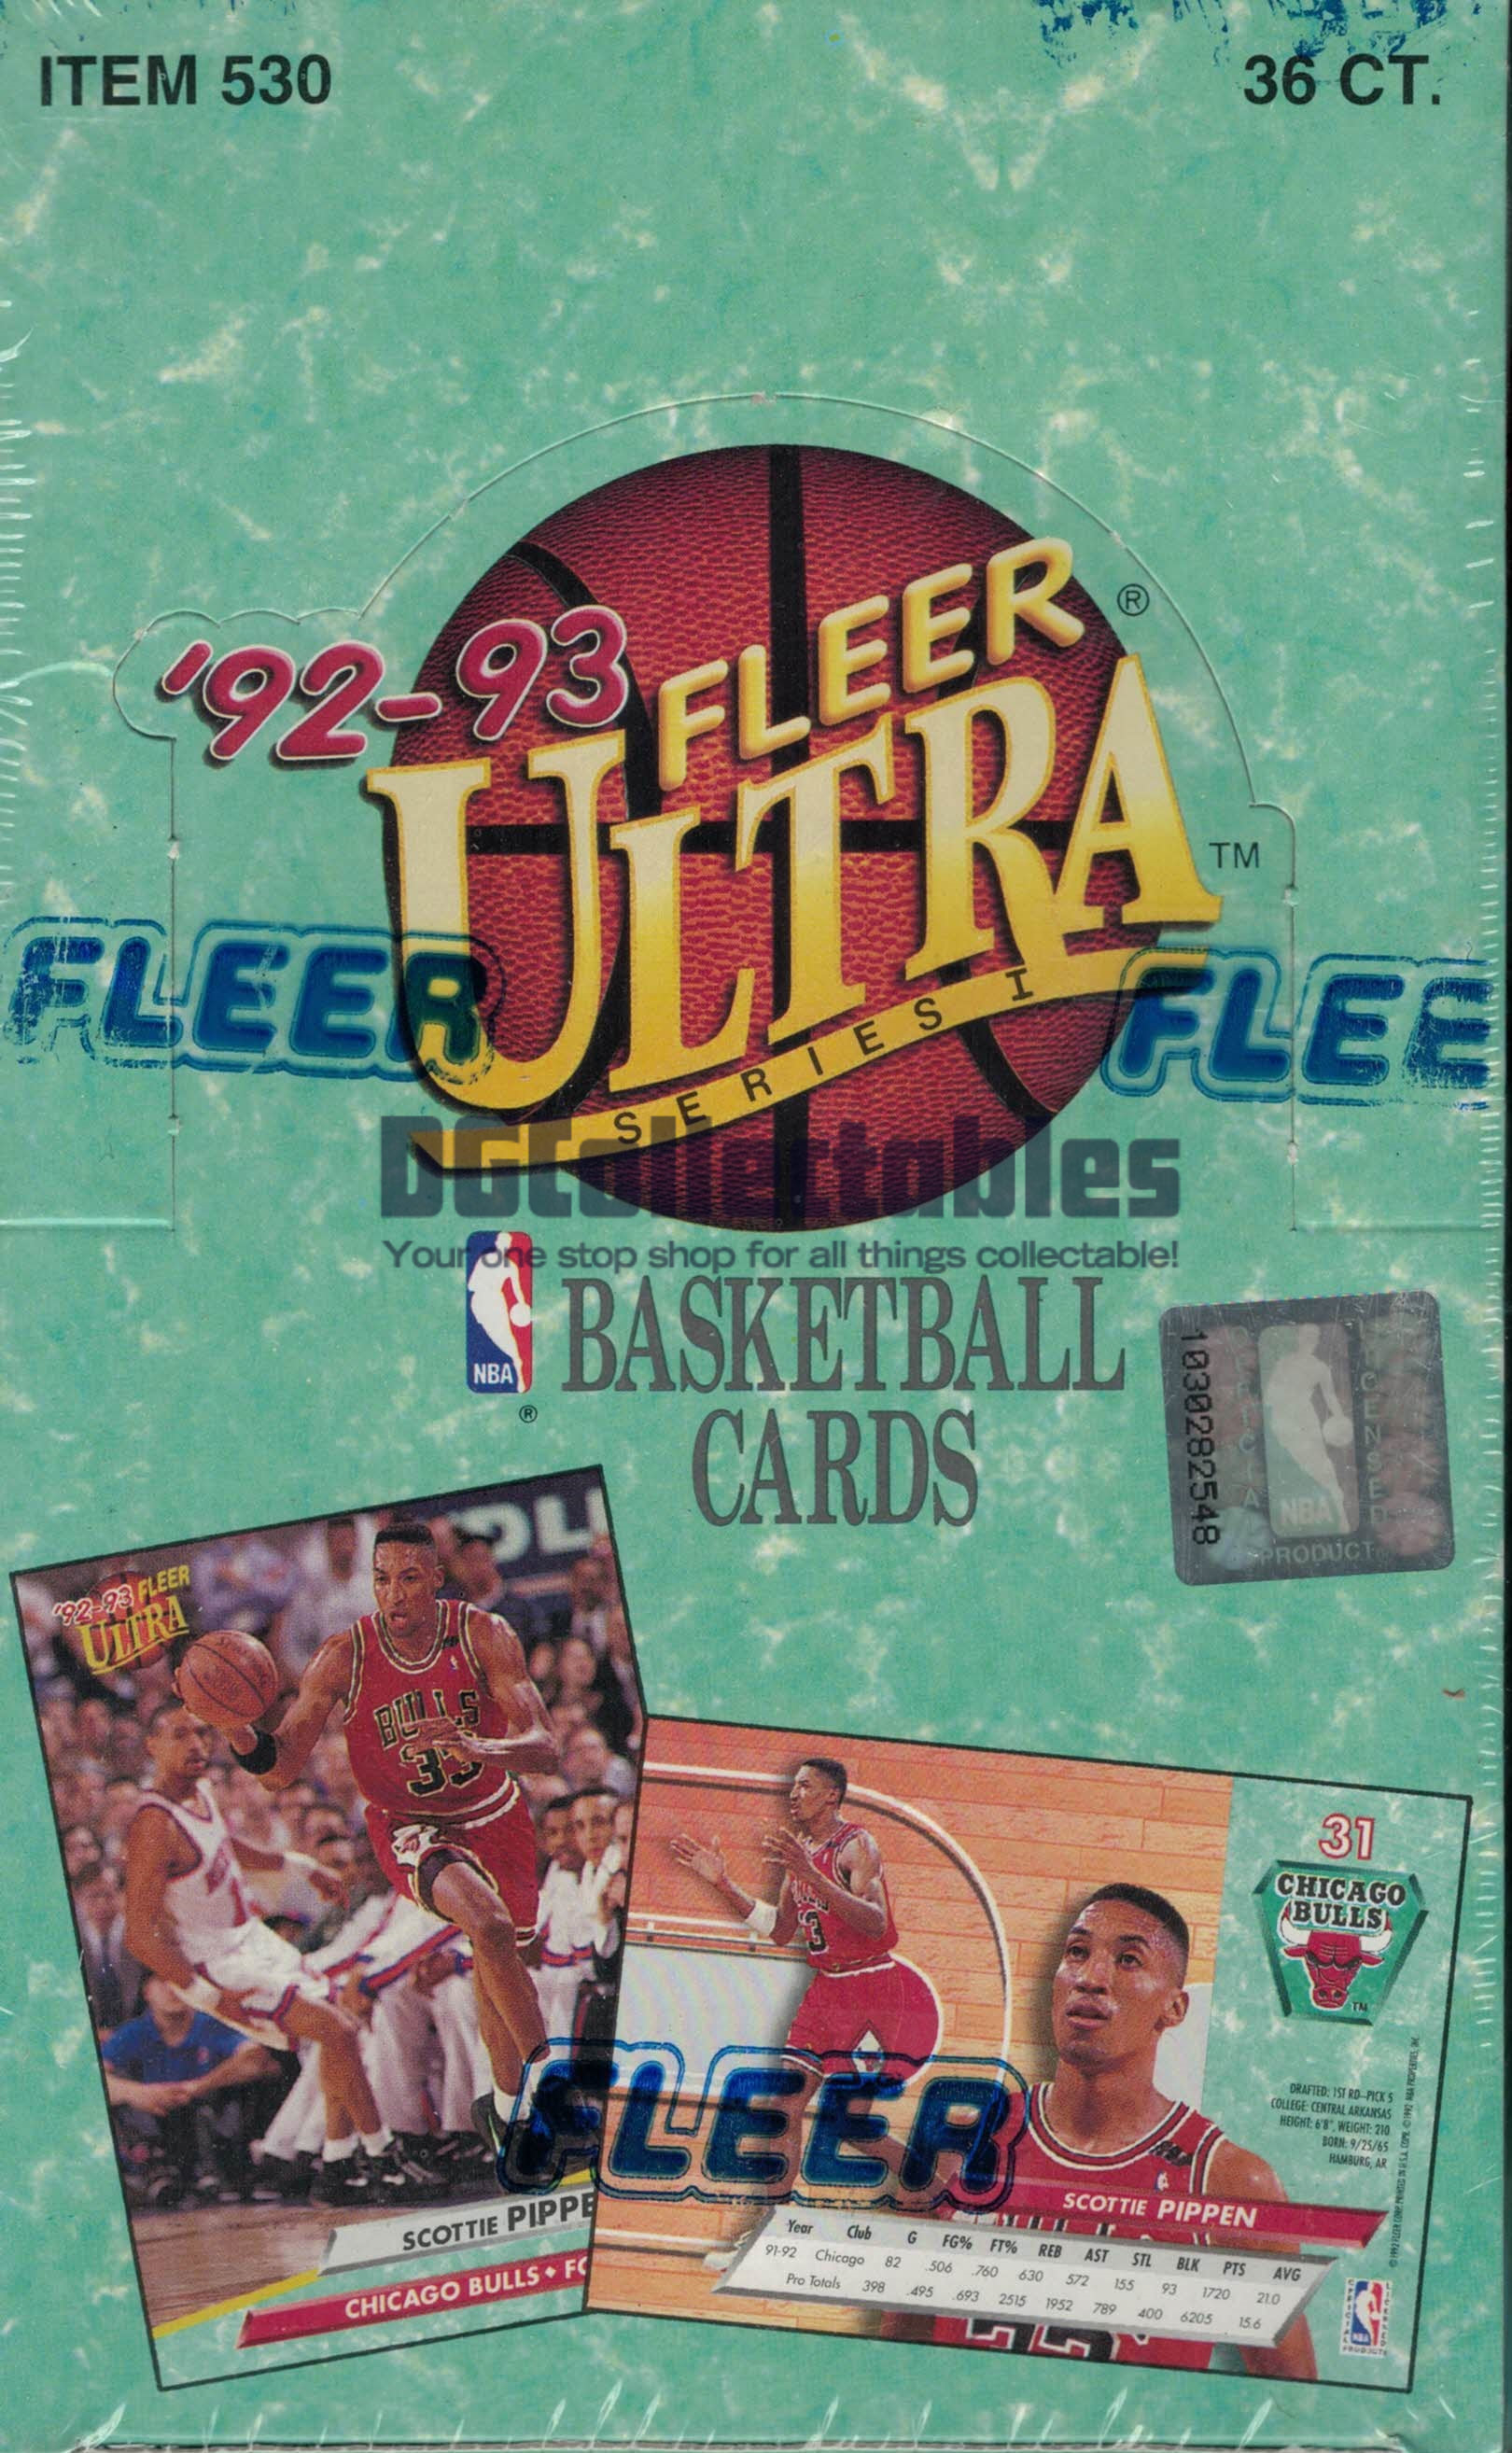 1992/93 Fleer Ultra Series 1 Basketball Hobby Box